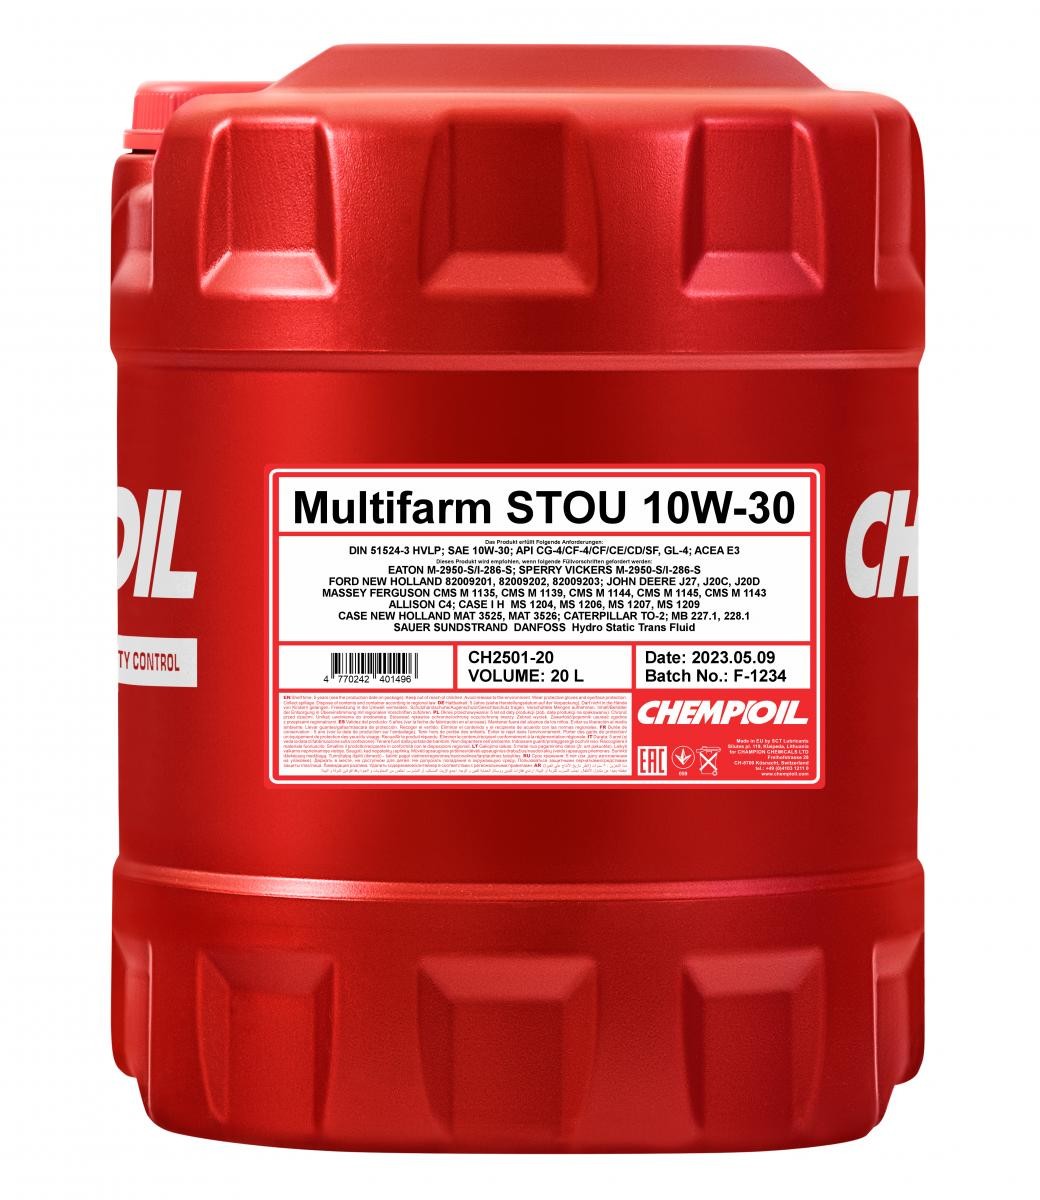 Aceite motor API GL 4 CHEMPIOIL - CH2501-20 Multifarm, Multifarm STOU, STOU